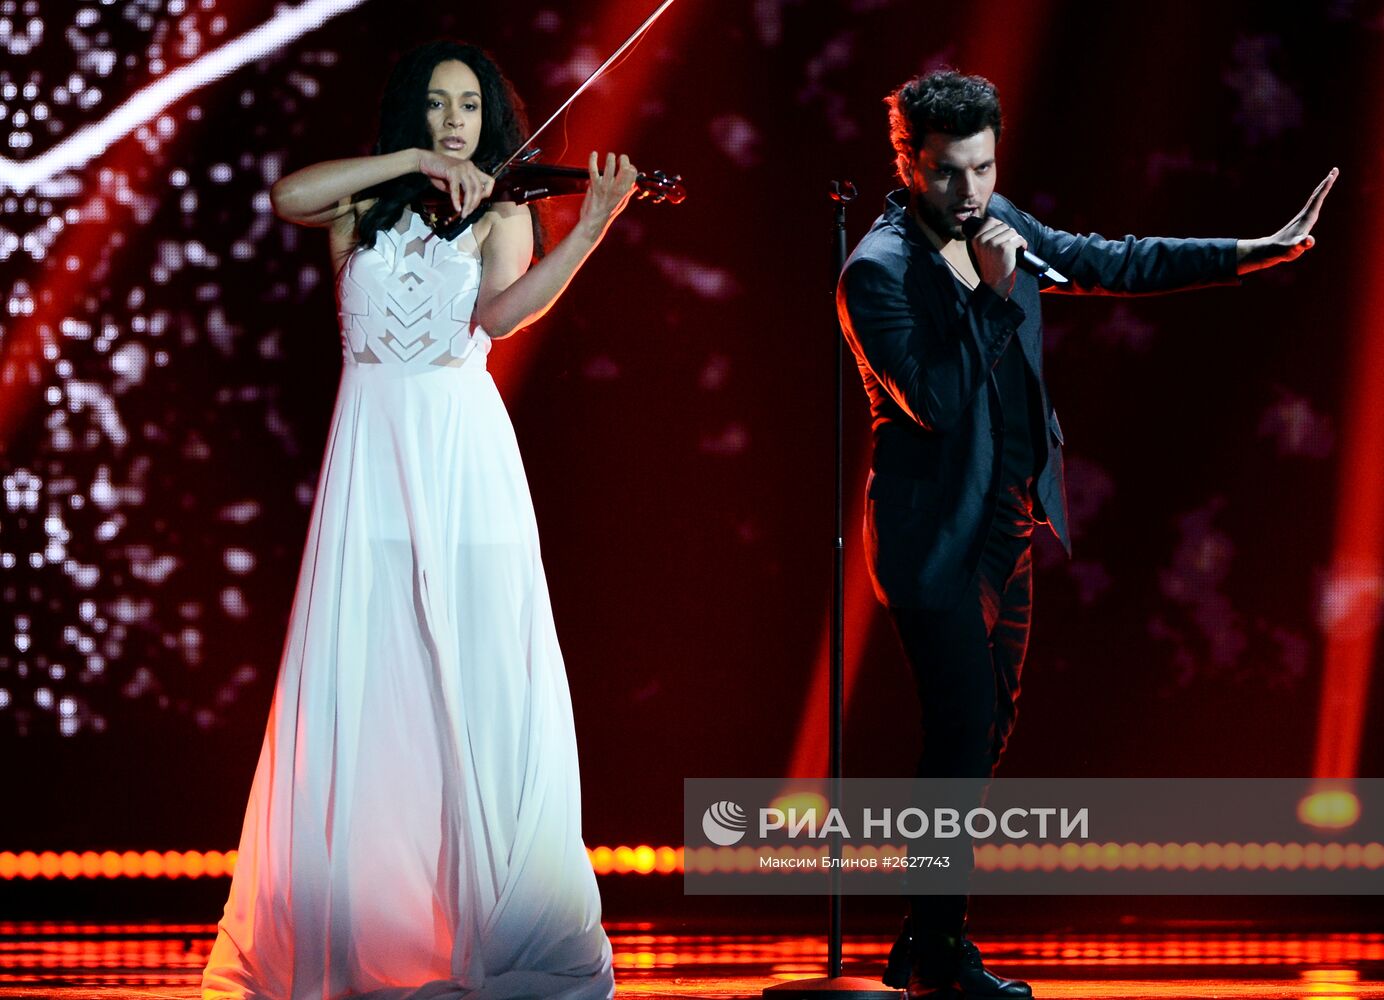 Репетиция первого полуфинала международного конкурса песни "Евровидение 2015" в Вене